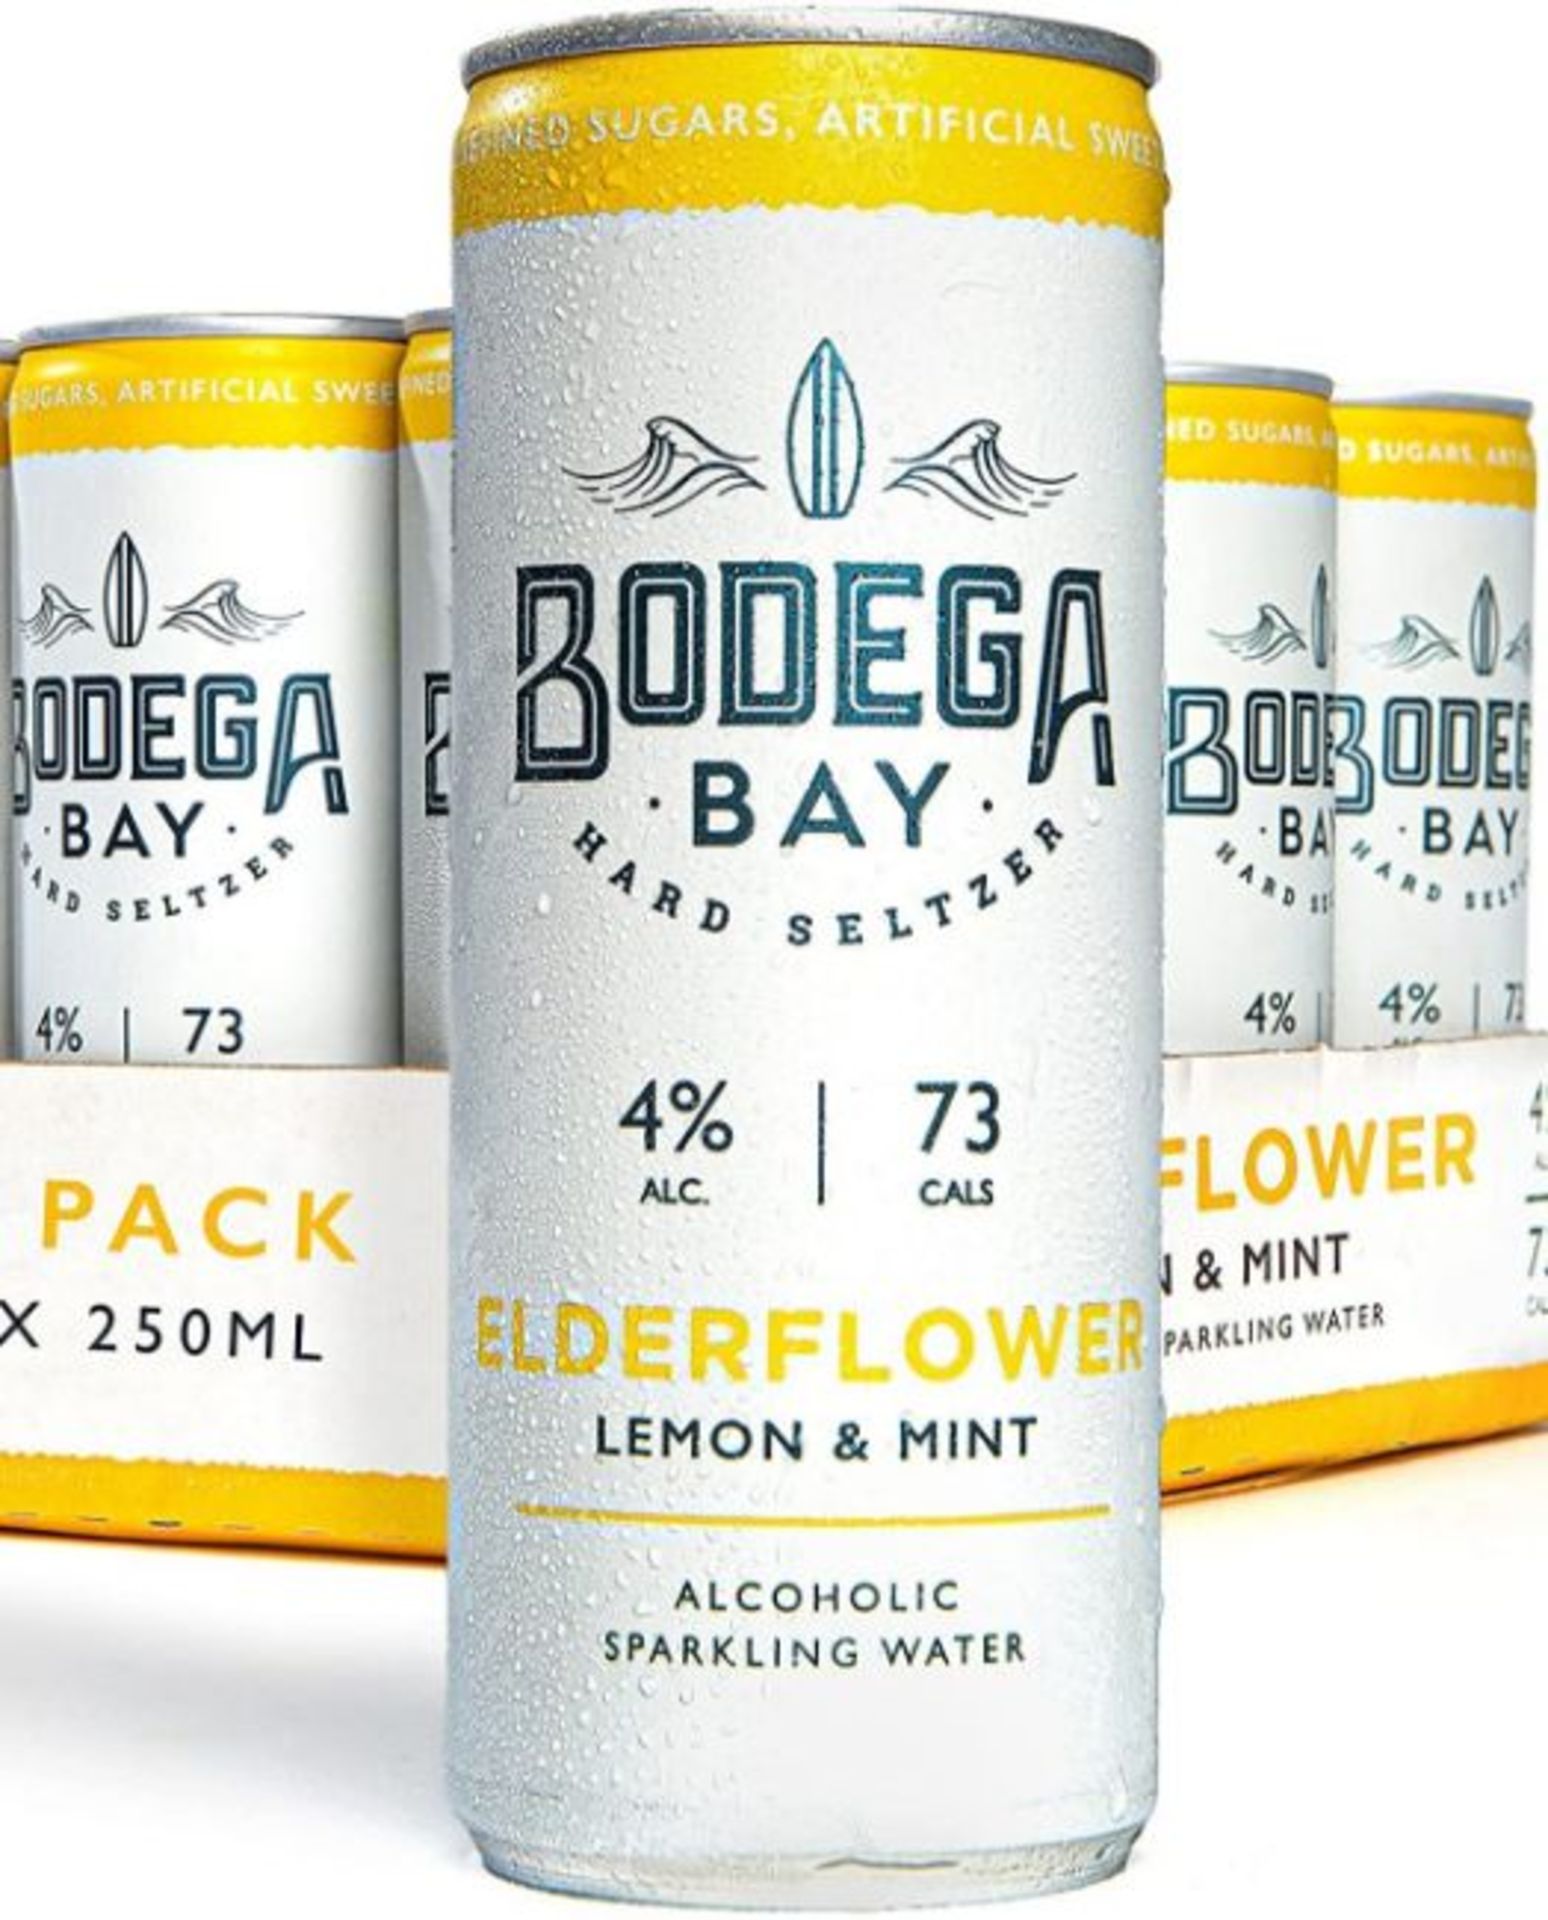 24 x Bodega Bay Hard Seltzer 250ml Alcoholic Sparkling Water Drinks - Elderflower Lemon & Mint - Image 4 of 9